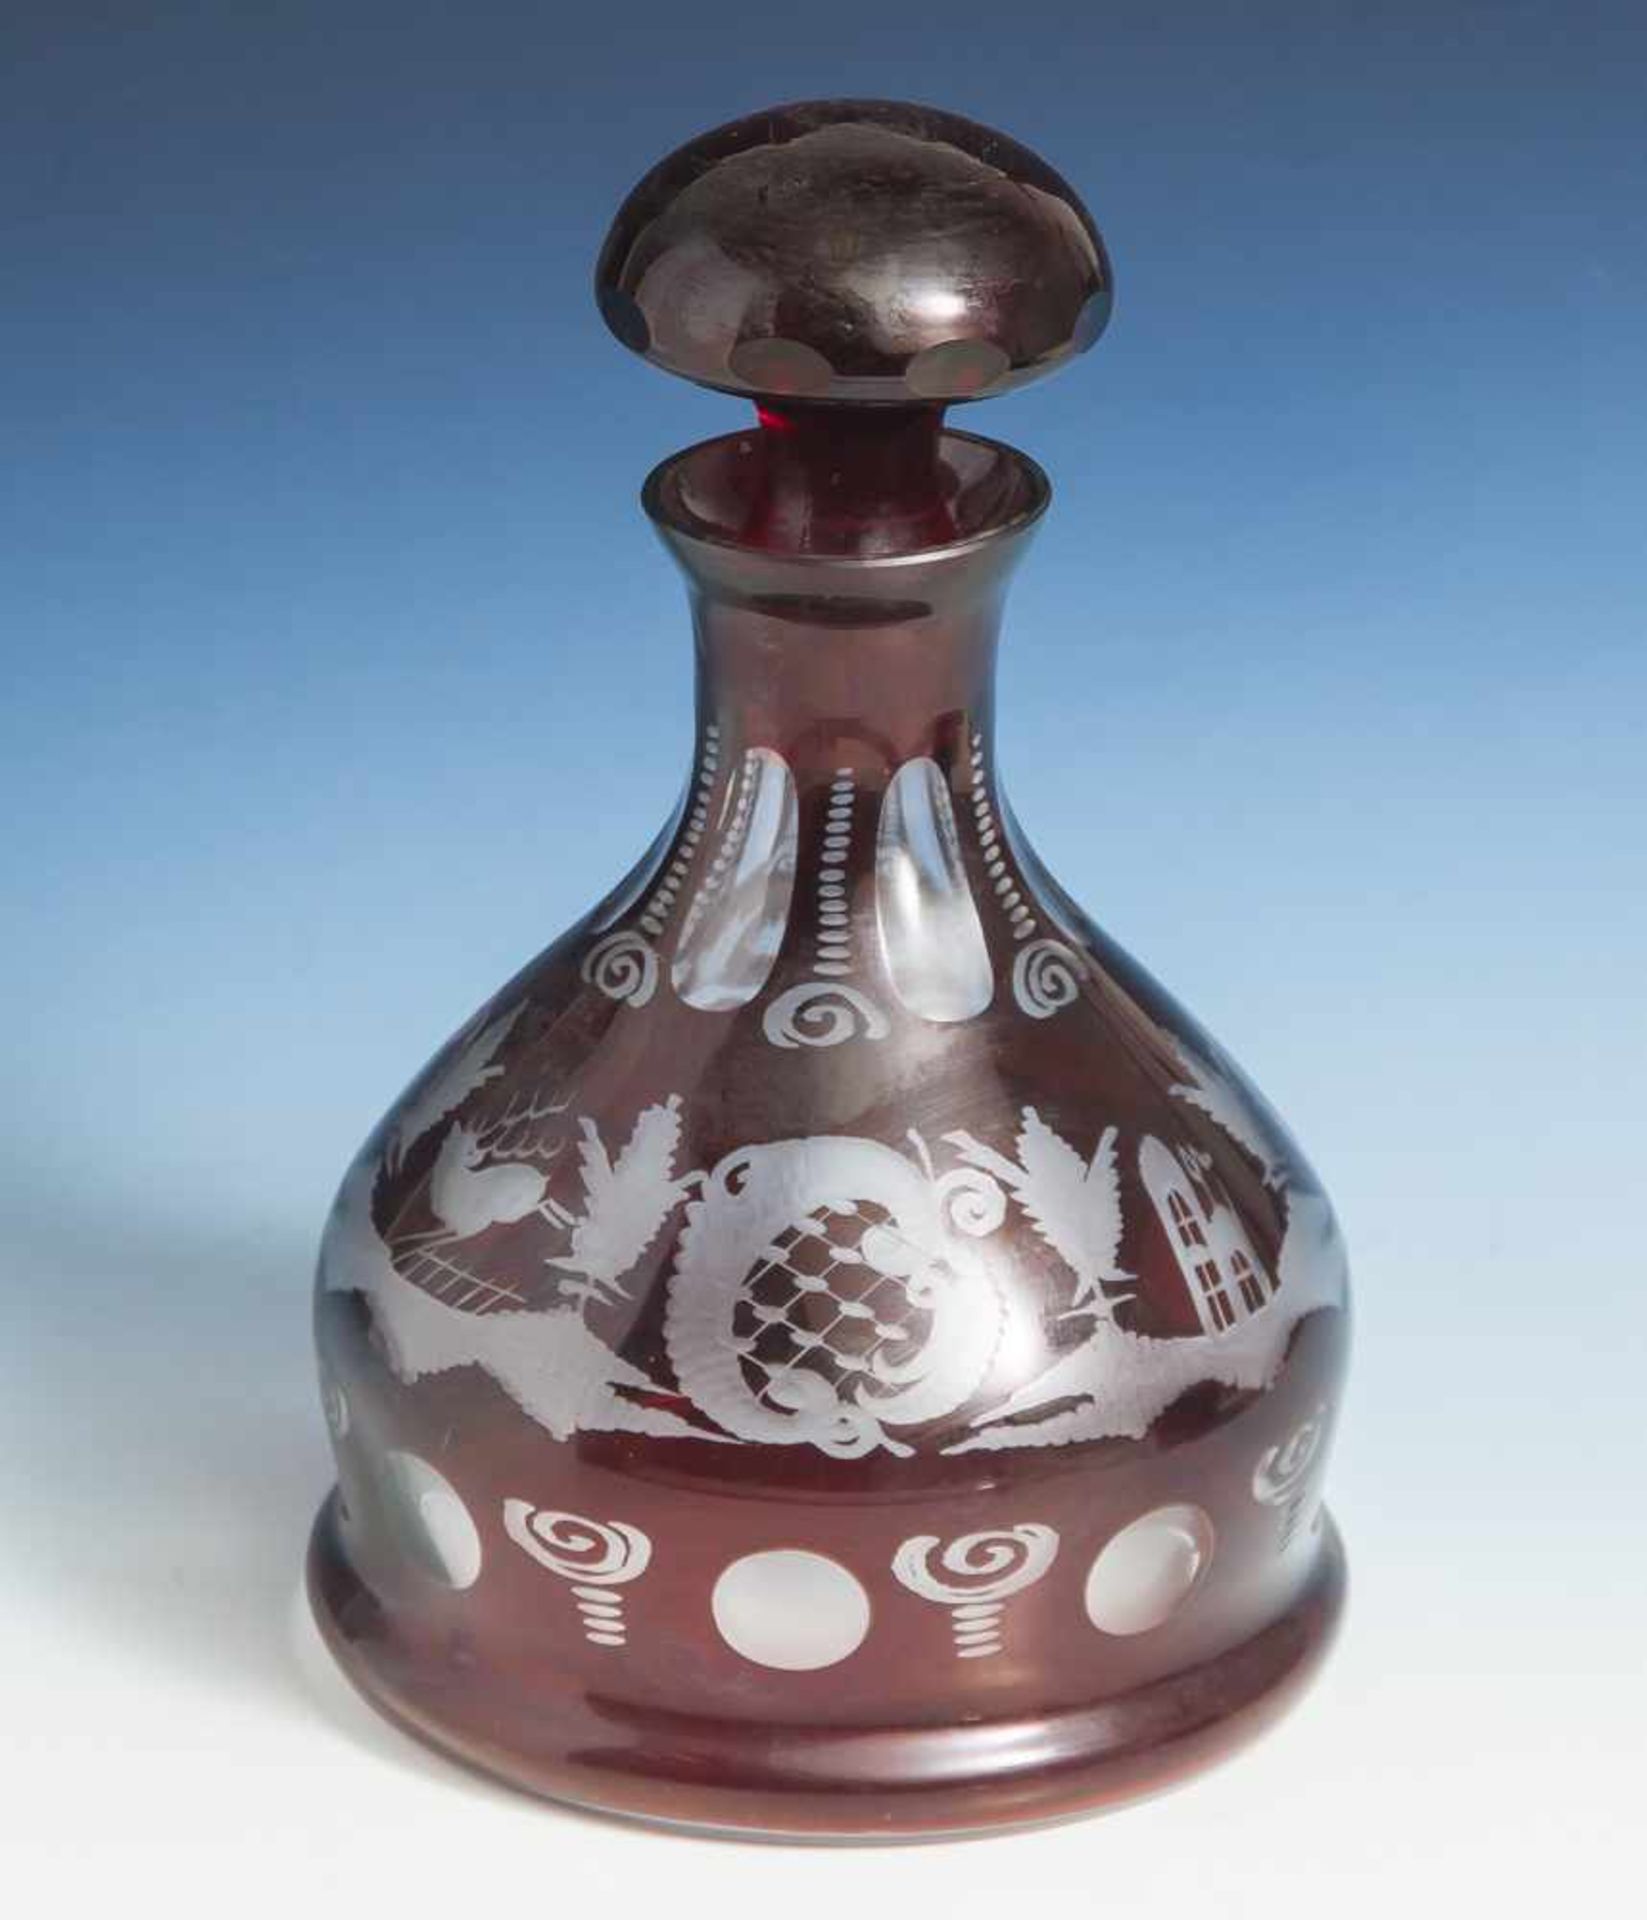 Karaffe, Böhmen, 19./20. Jahrhundert, farbloses Glas, partiell rubinrot überfangen,geschliffenes